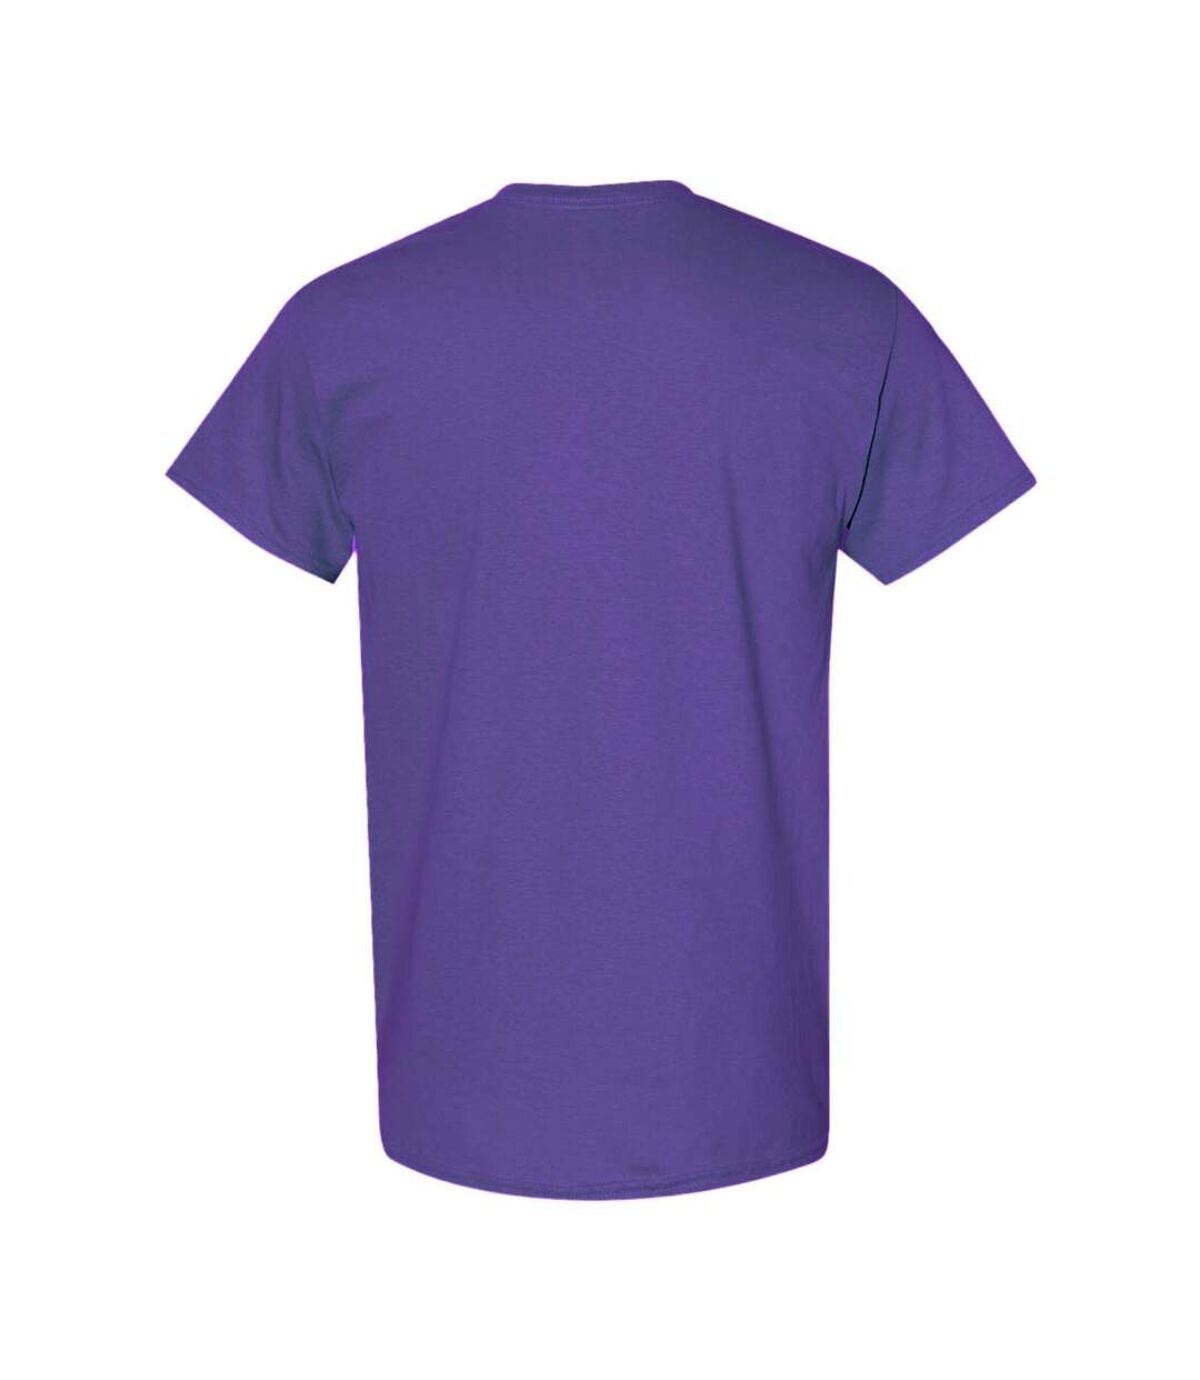 Gildan – Lot de 5 T-shirts manches courtes - Hommes (Lilas) - UTBC4807